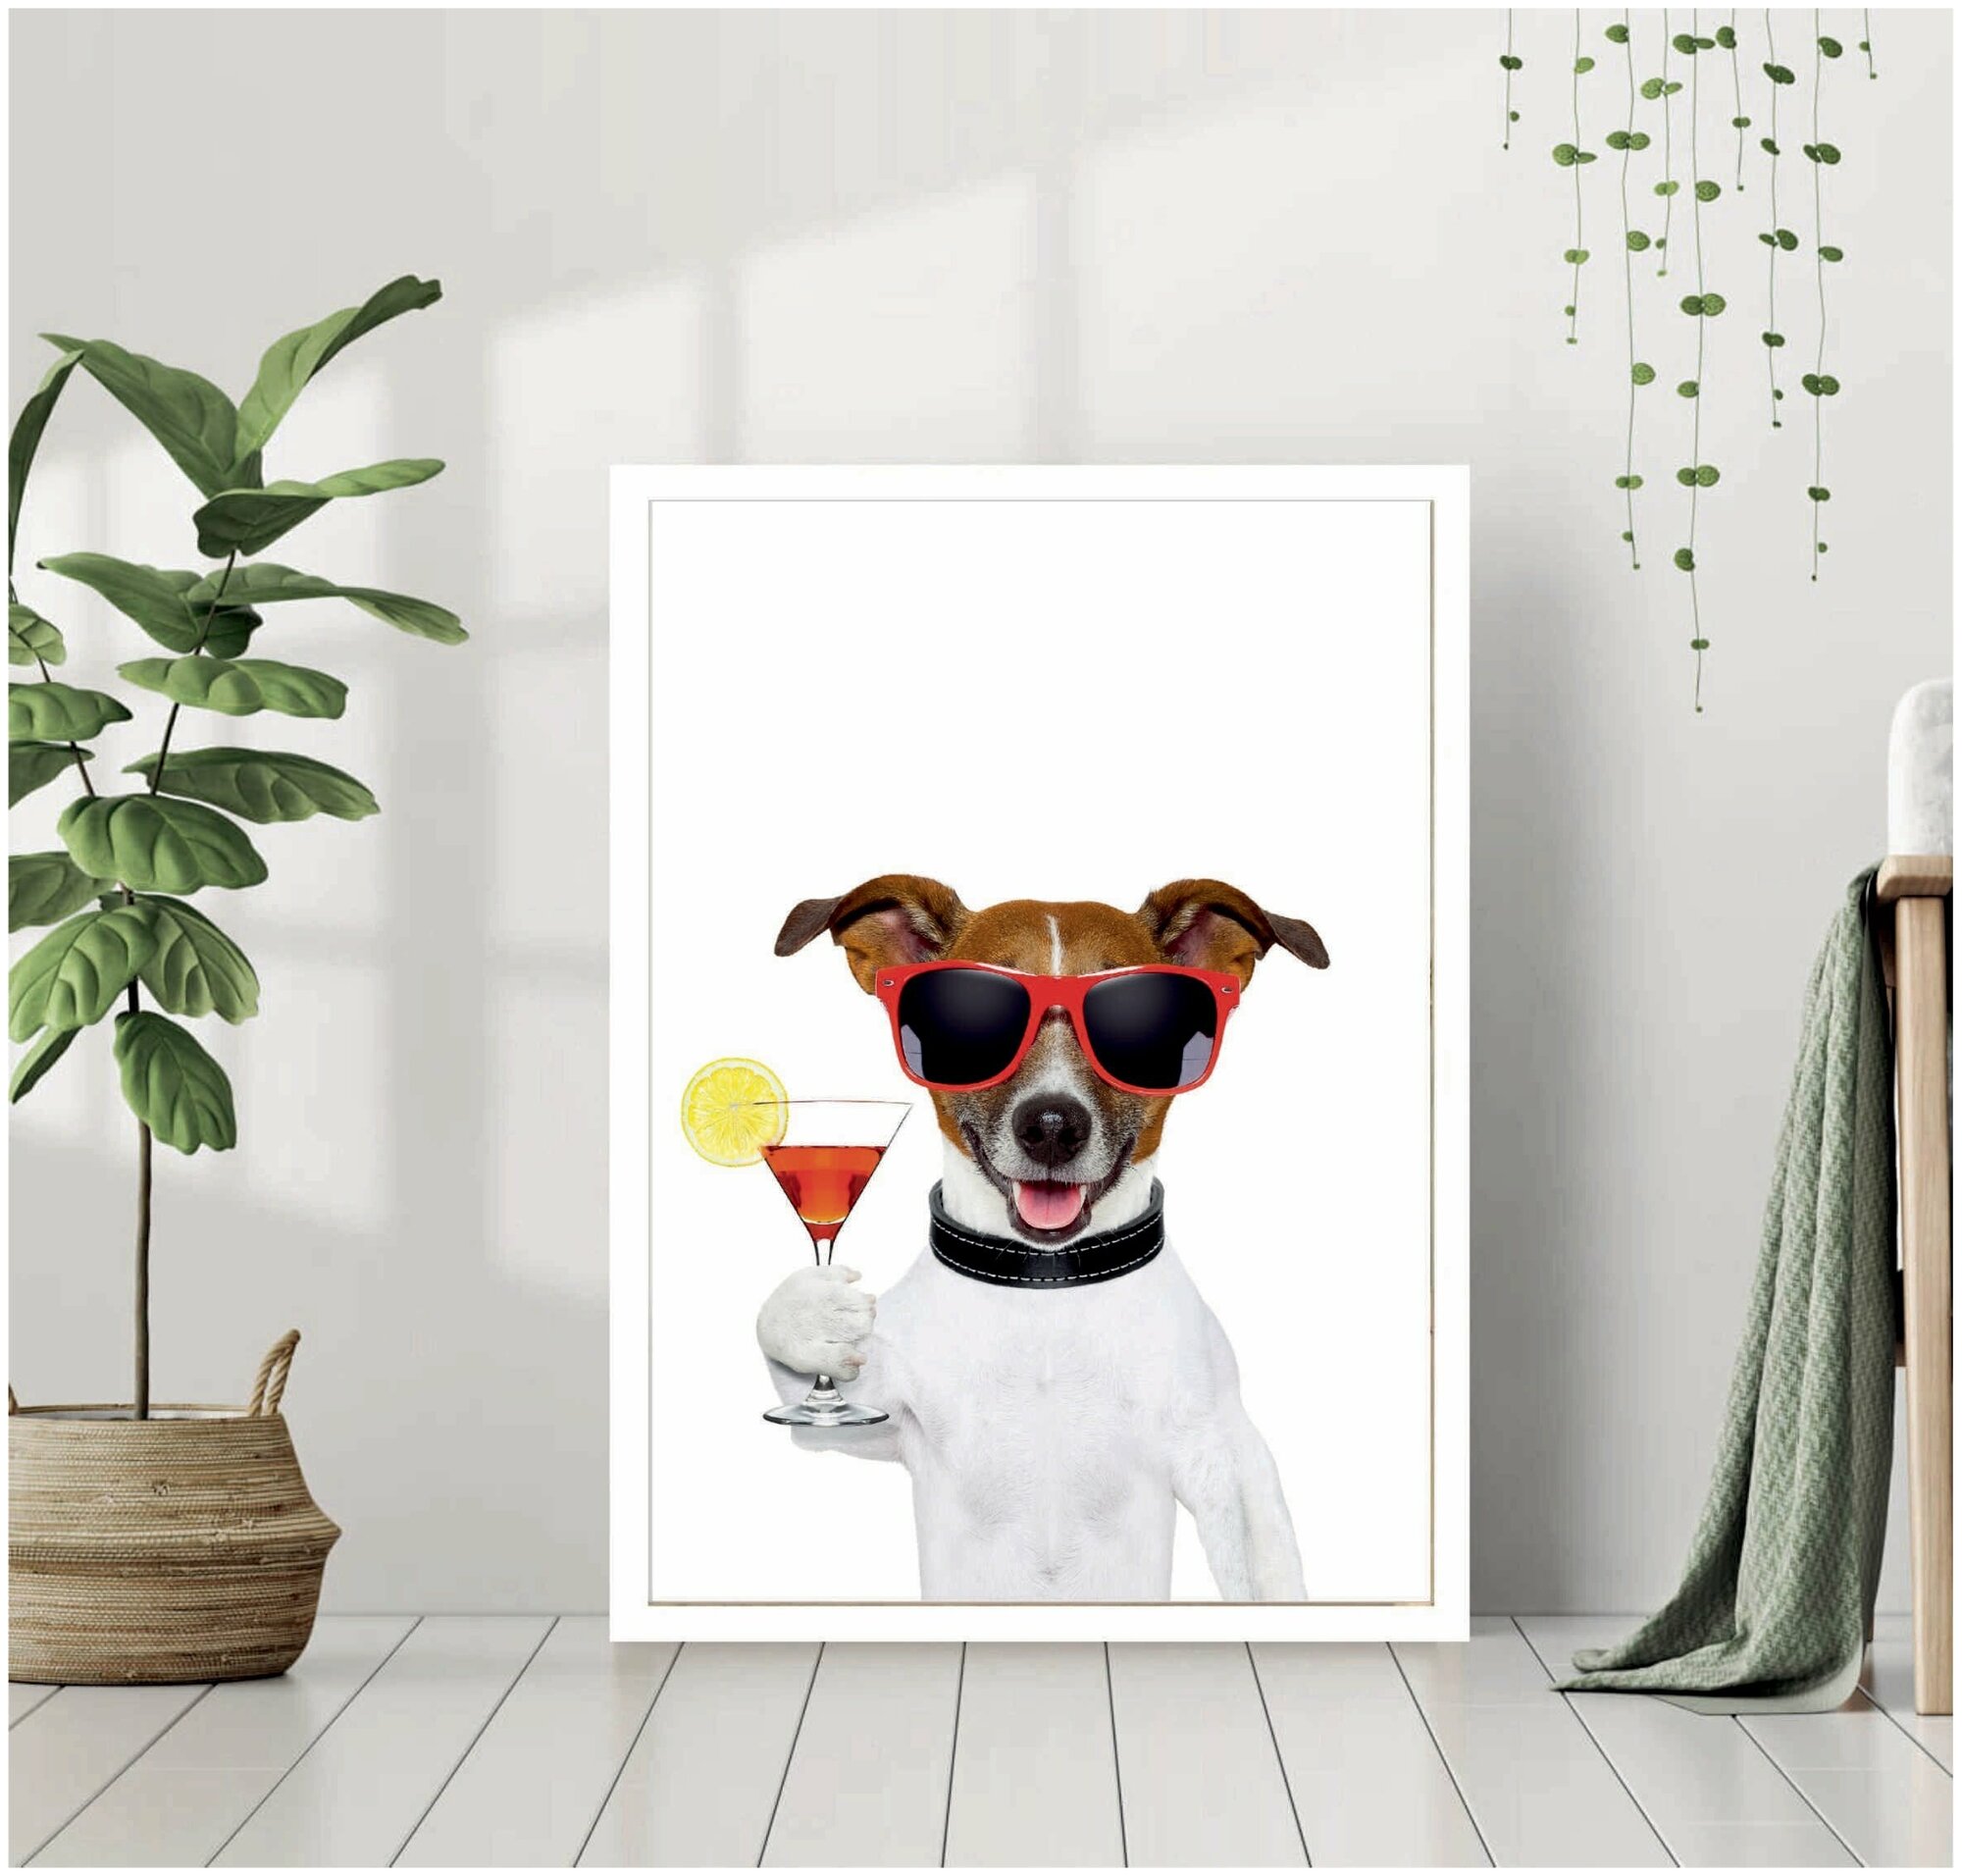 Постер В рамке "Собака с коктейлем" 40 на 50 (белая рама) / Картина для интерьера / Плакат / Постер на стену / Интерьерные картины в рамке